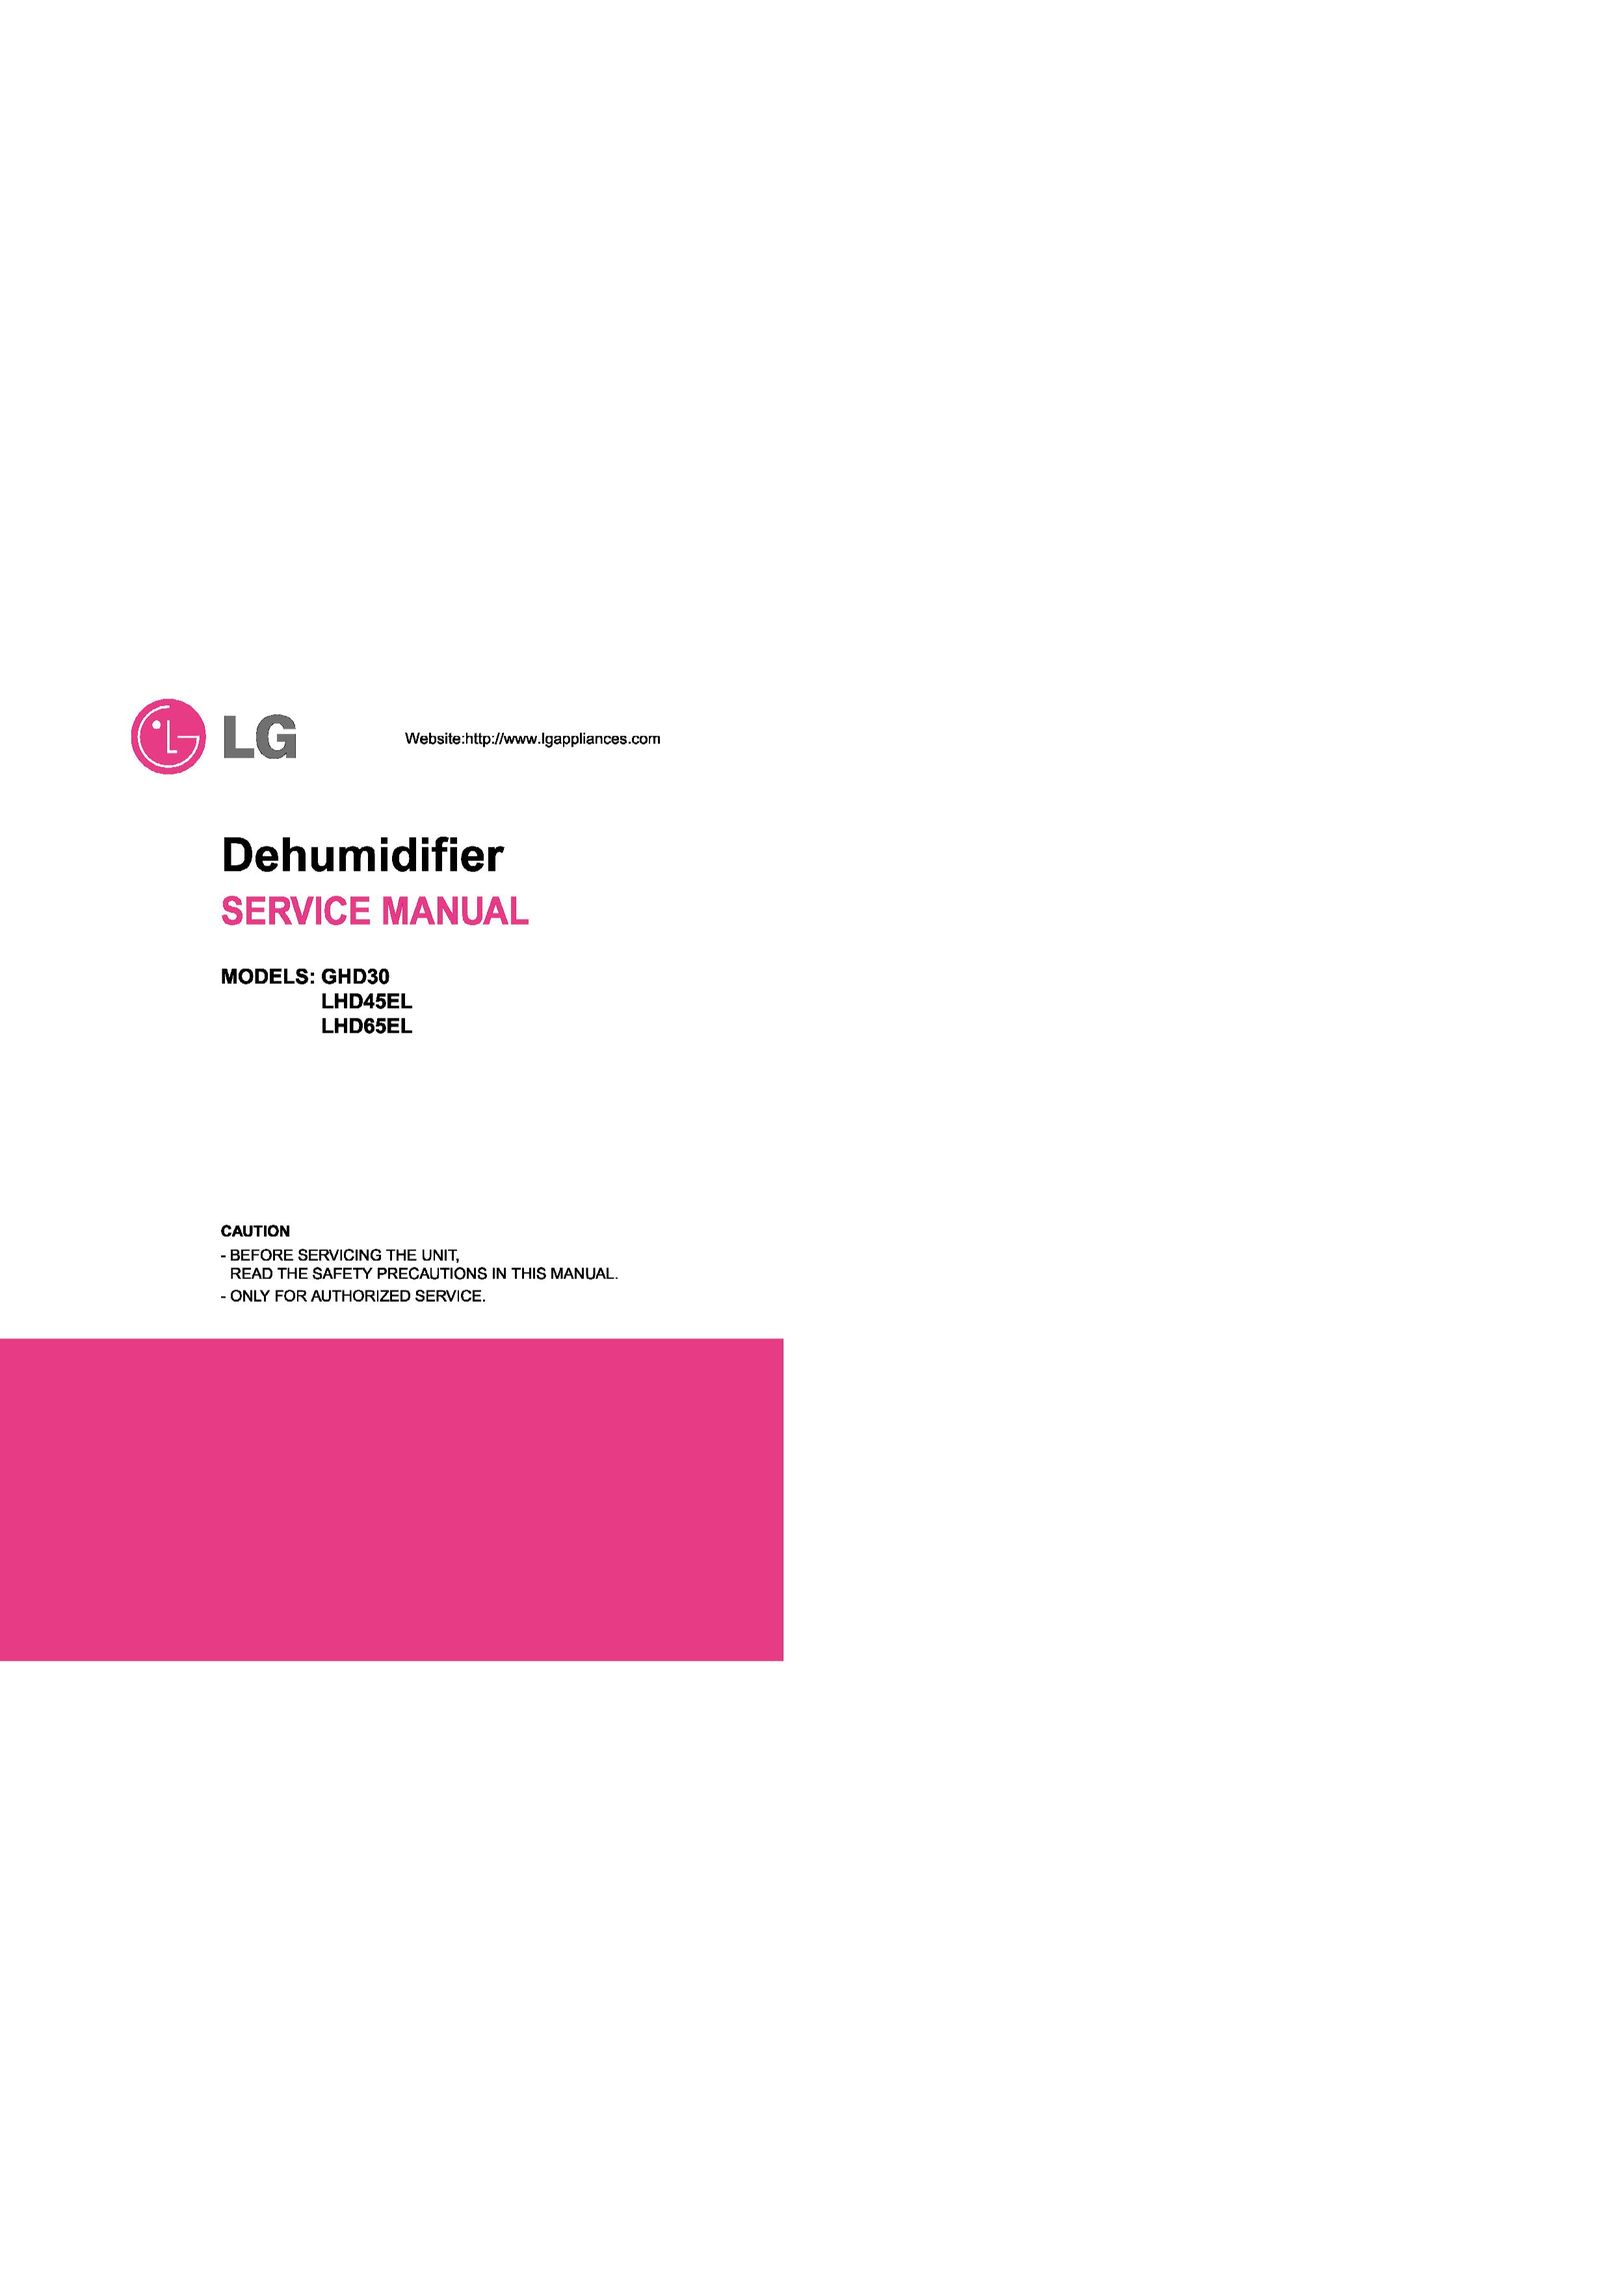 LG Electronics LHD45EL Dehumidifier User Manual